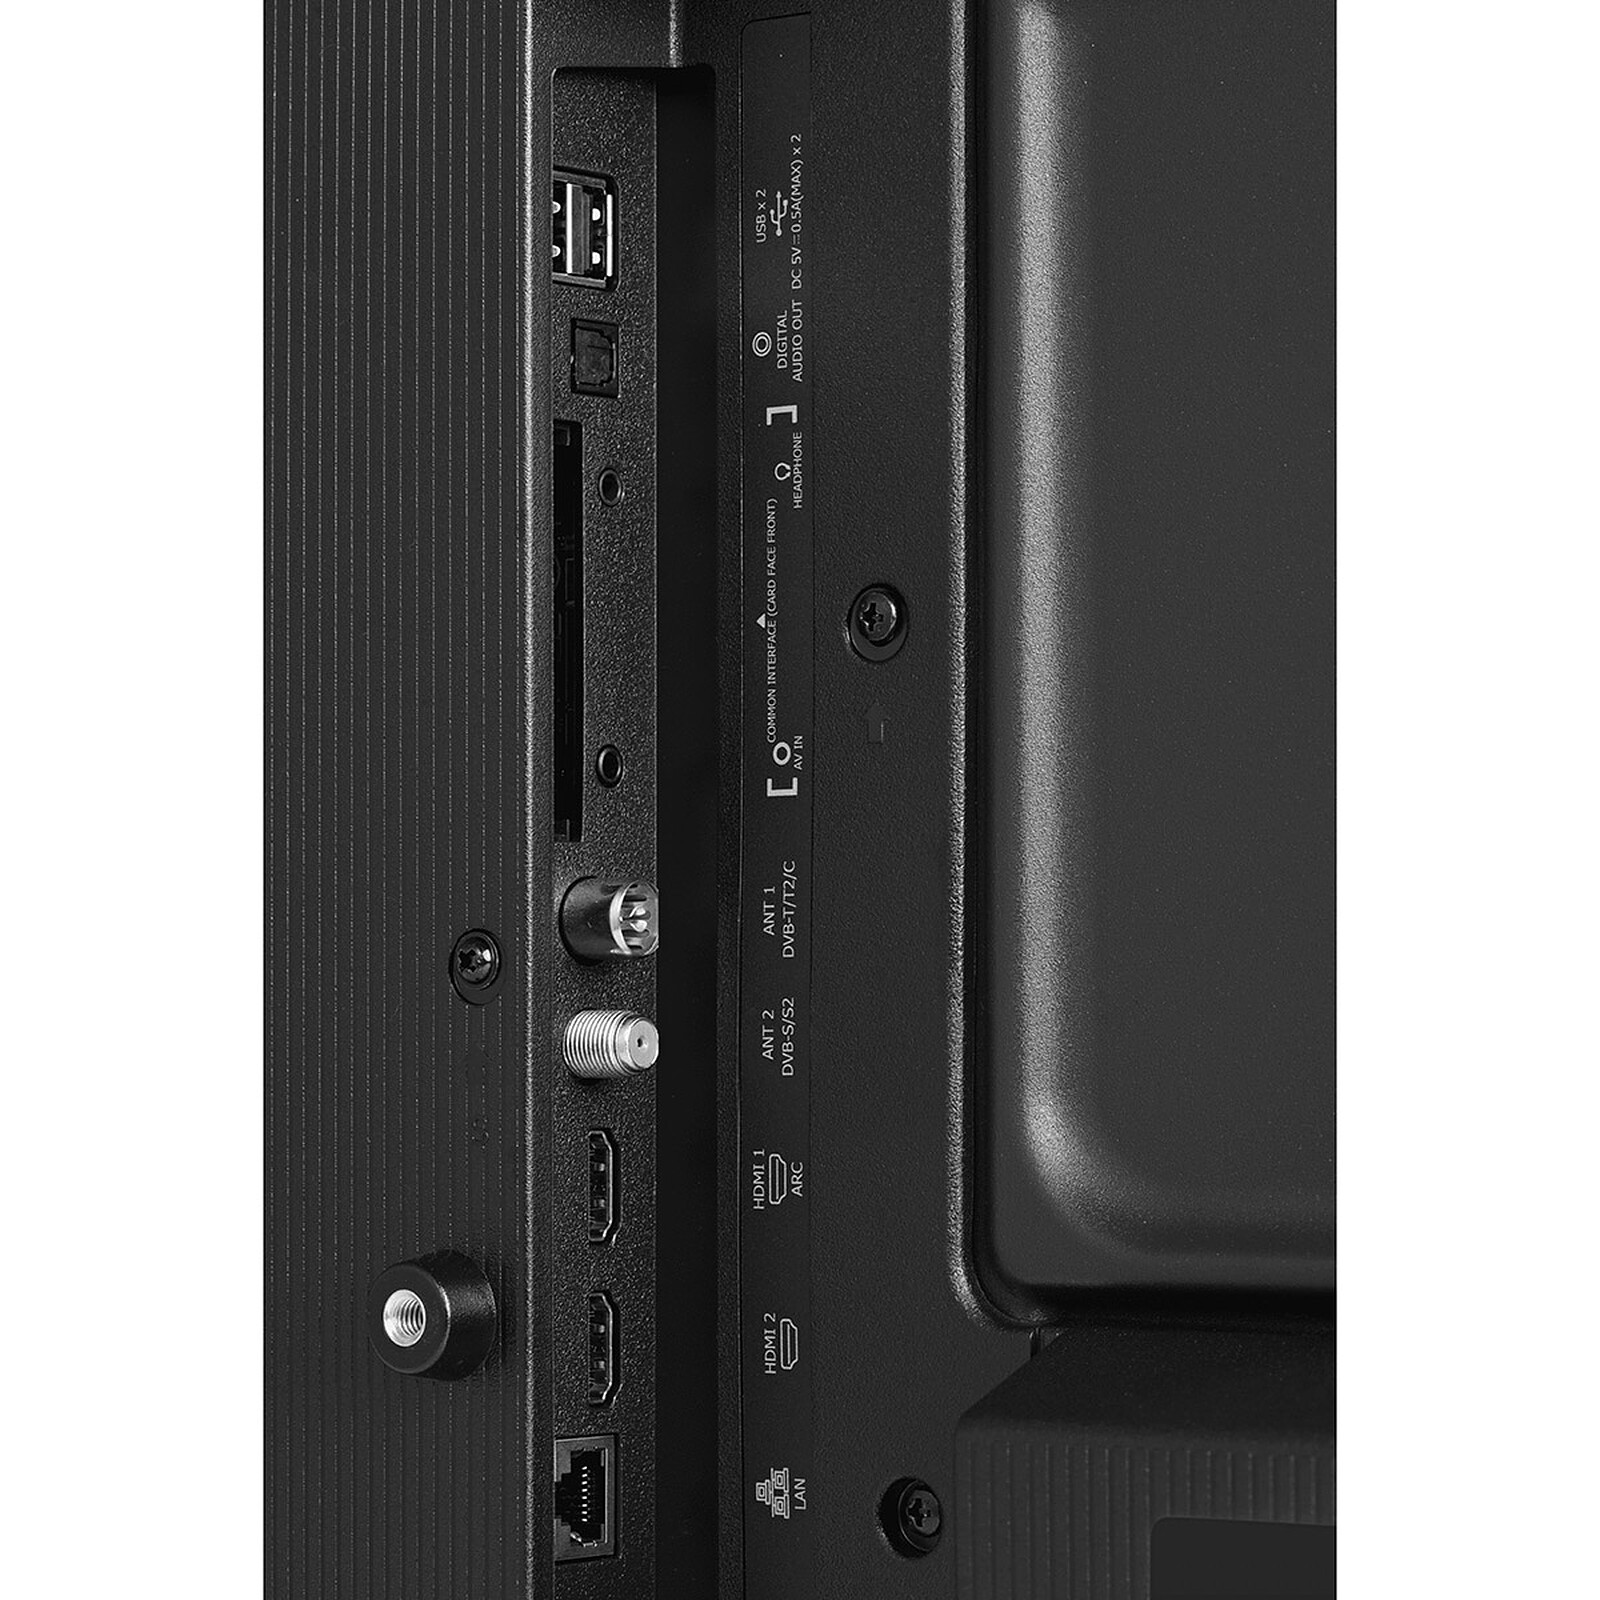 Hisense 32A5600FTUK review: a slim, sleek and smart TV